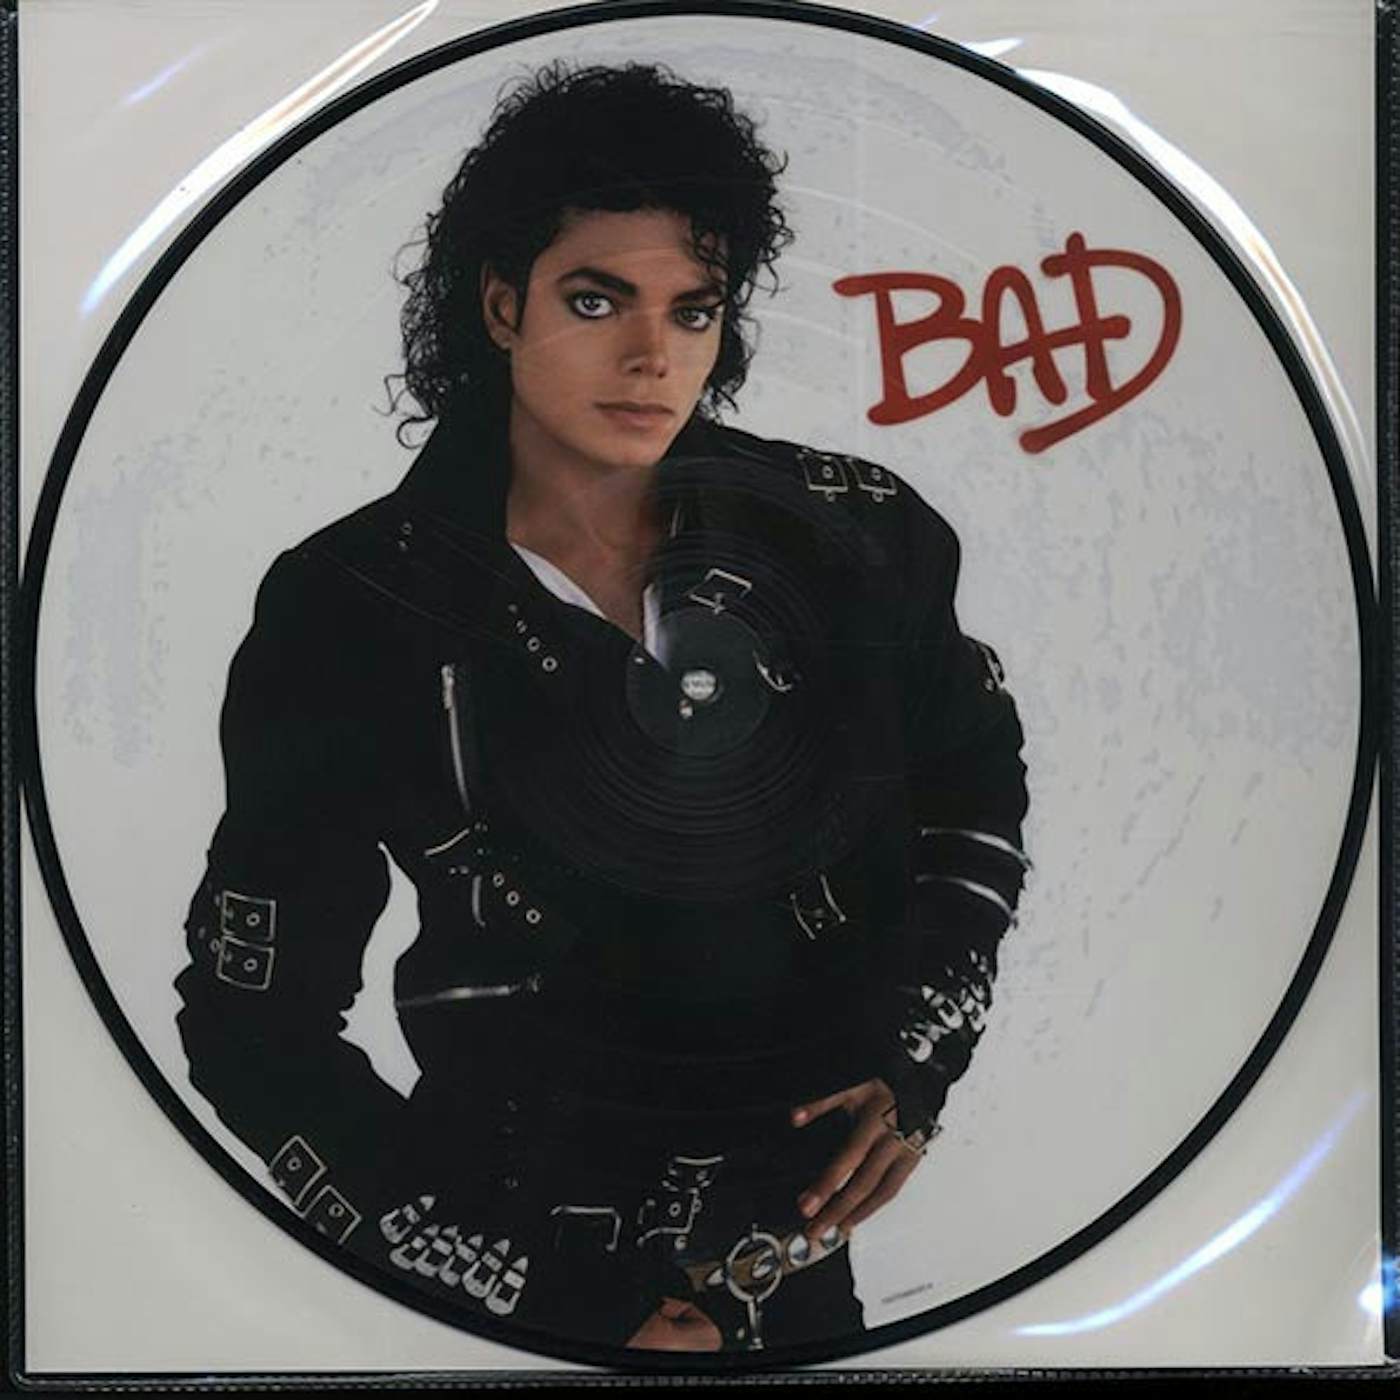 Bad, Vinilo Michael Jackson, Picture disc